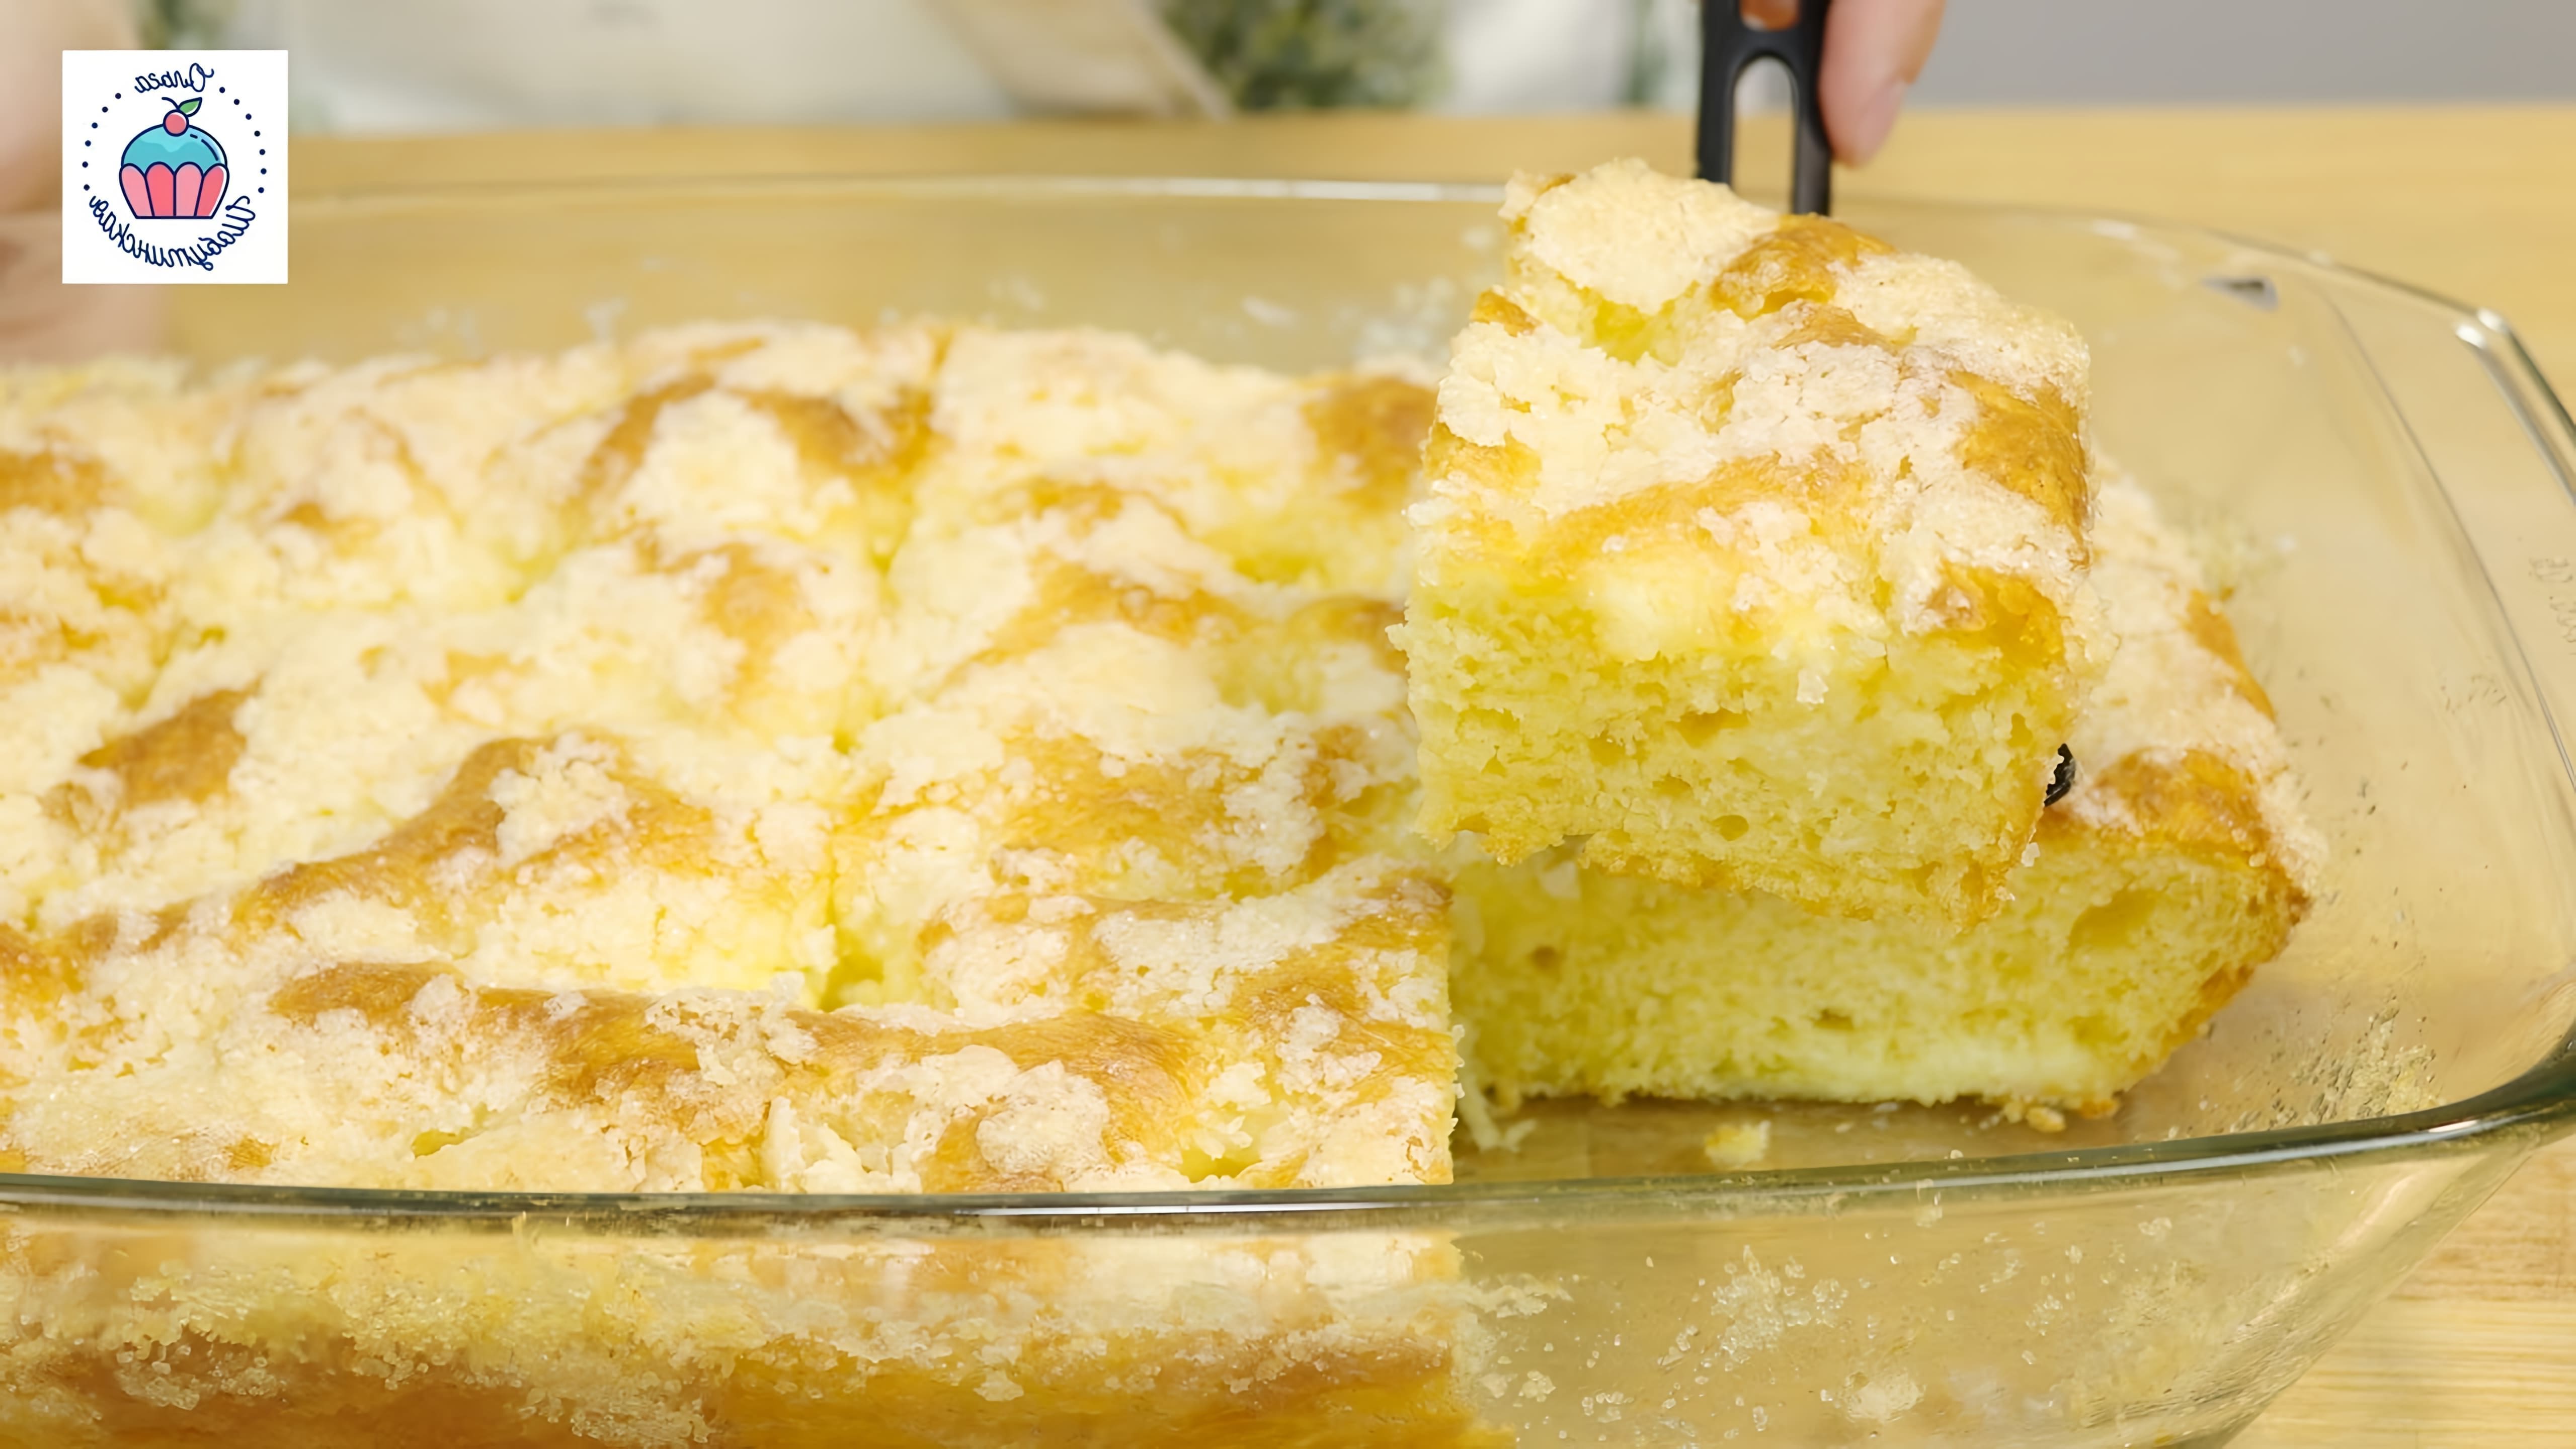 В этом видео демонстрируется рецепт приготовления сахарного пирога